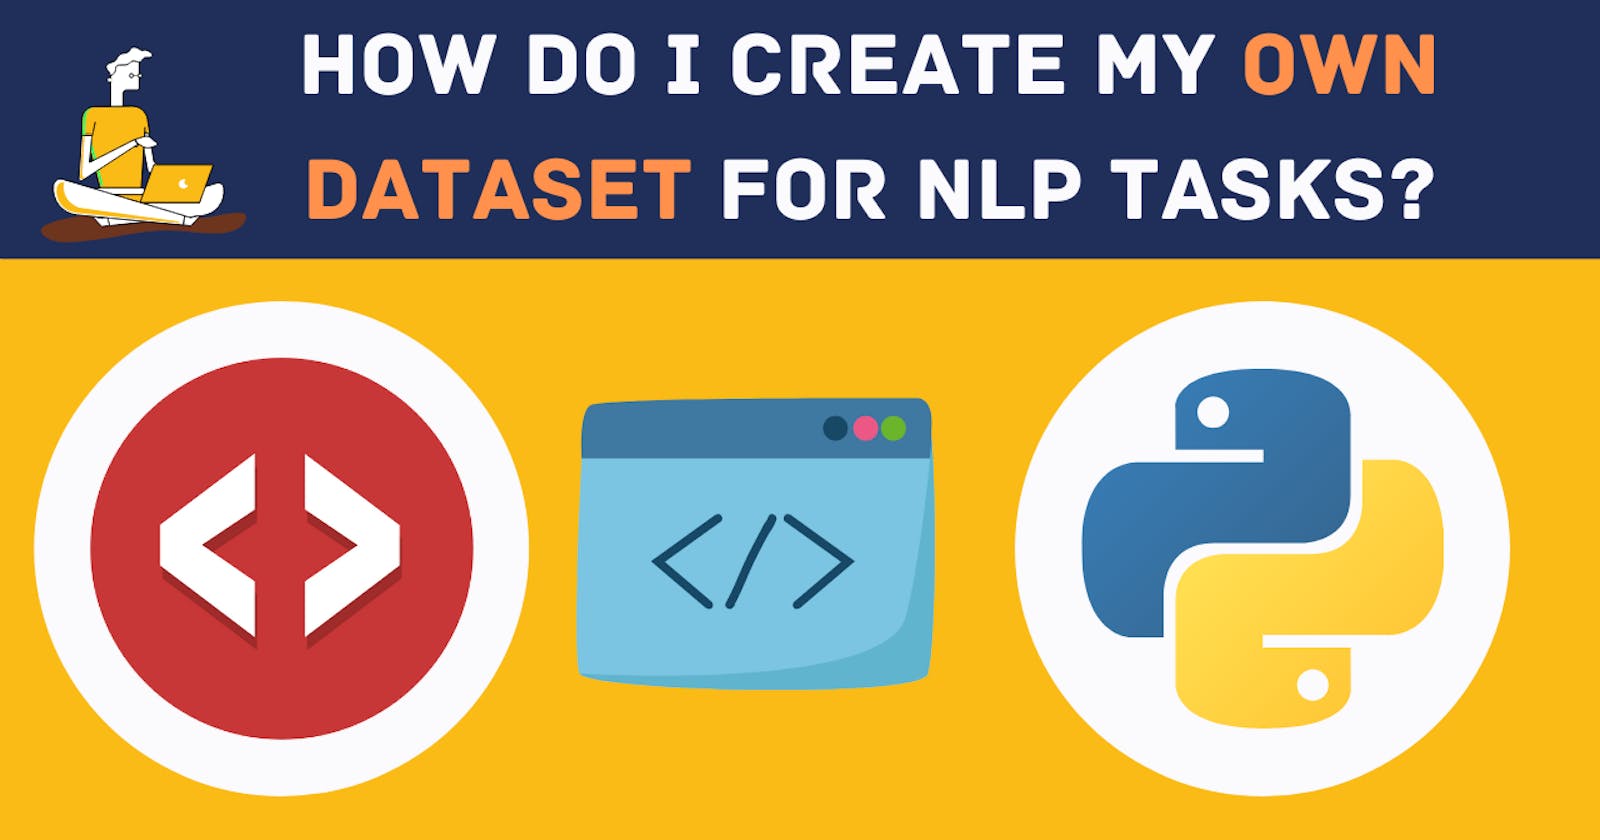 How do I create my own dataset for the NLP tasks?